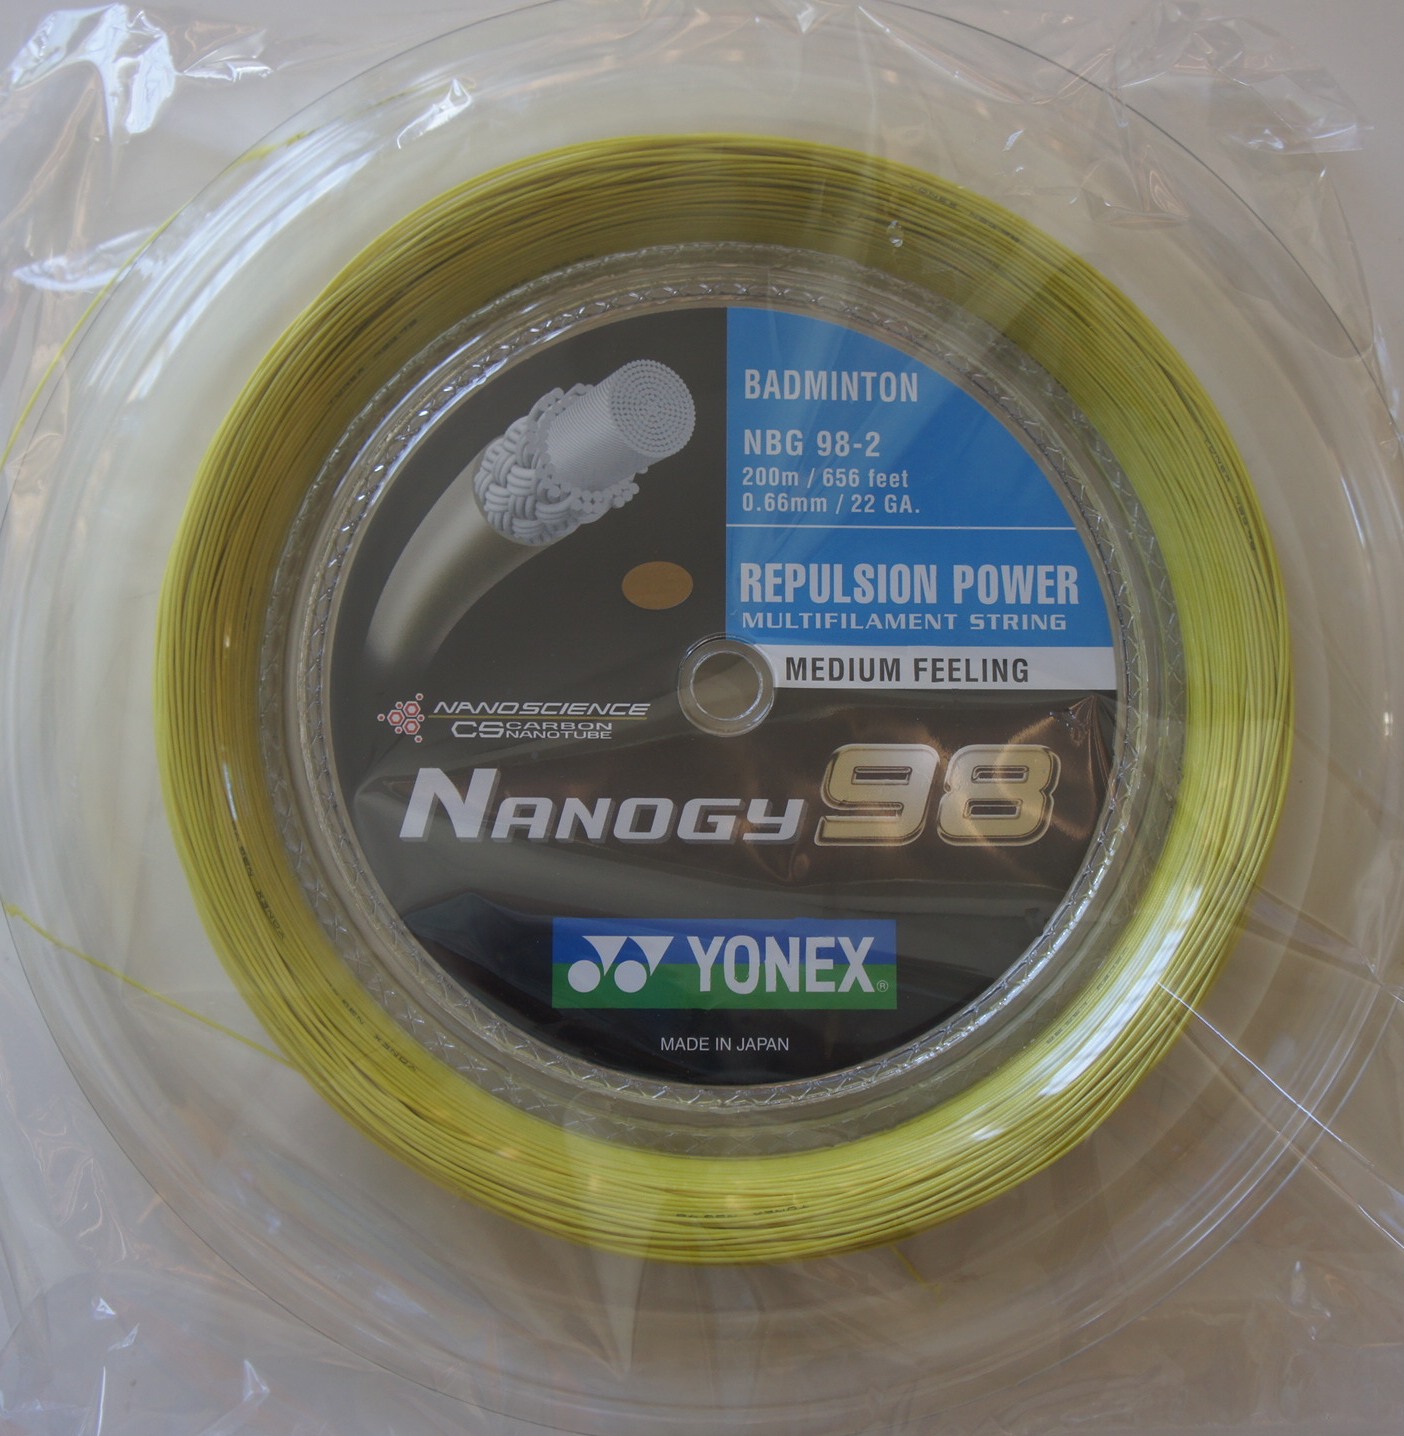 YONEX Nanogy 98 NBG98 Badminton Coil String, 200 m, Yellow